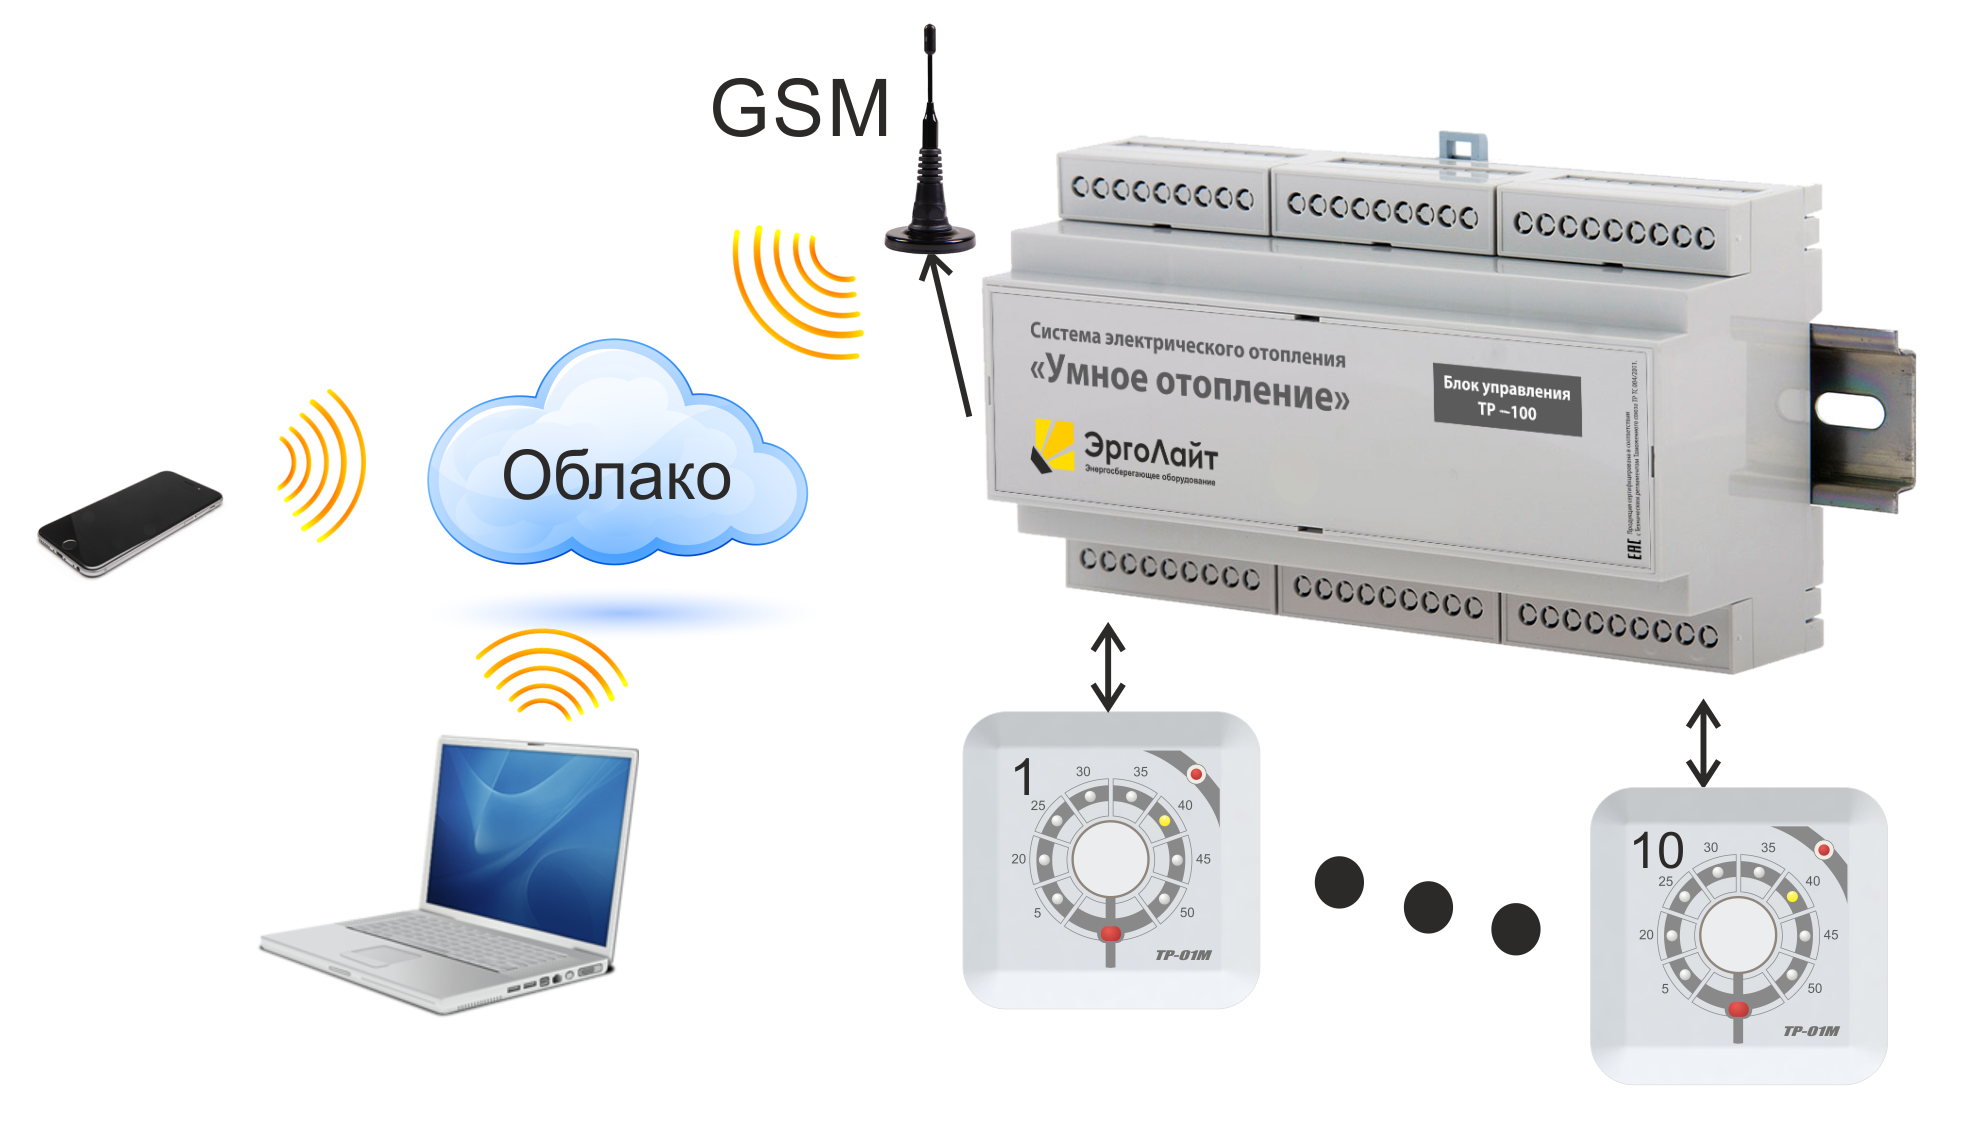 Про gsm. GSM модуль управления котлом. Контроллер GSM для отопления. Контроллер для твердотопливного котла с GSM модулем. GSM пульт управления котлом отопления.